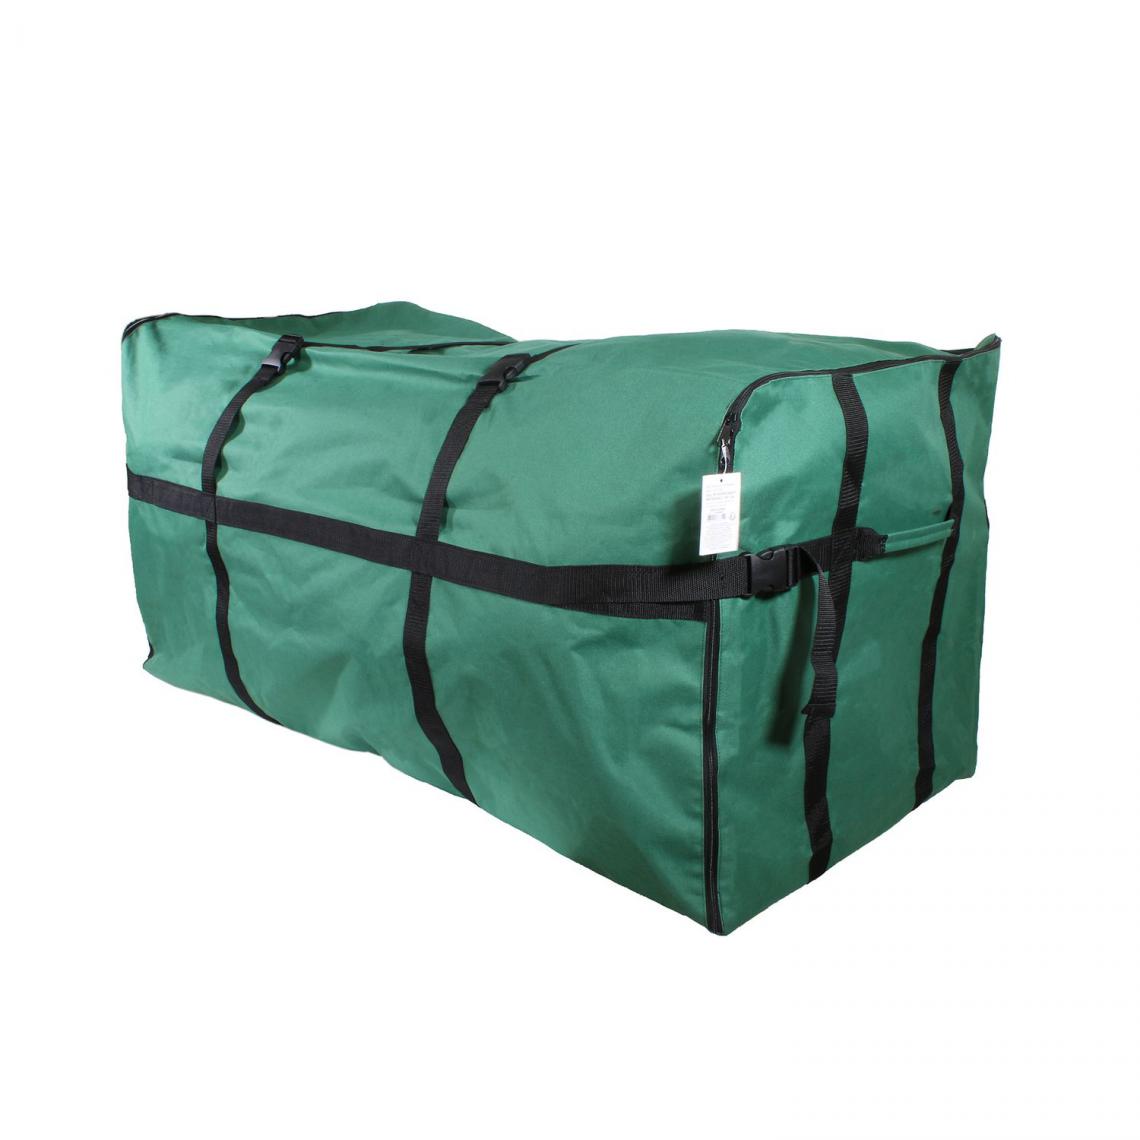 Toilinux - Sac de rangement rectangulaire en polyester - Vert et noir - Rangements placards et tiroirs